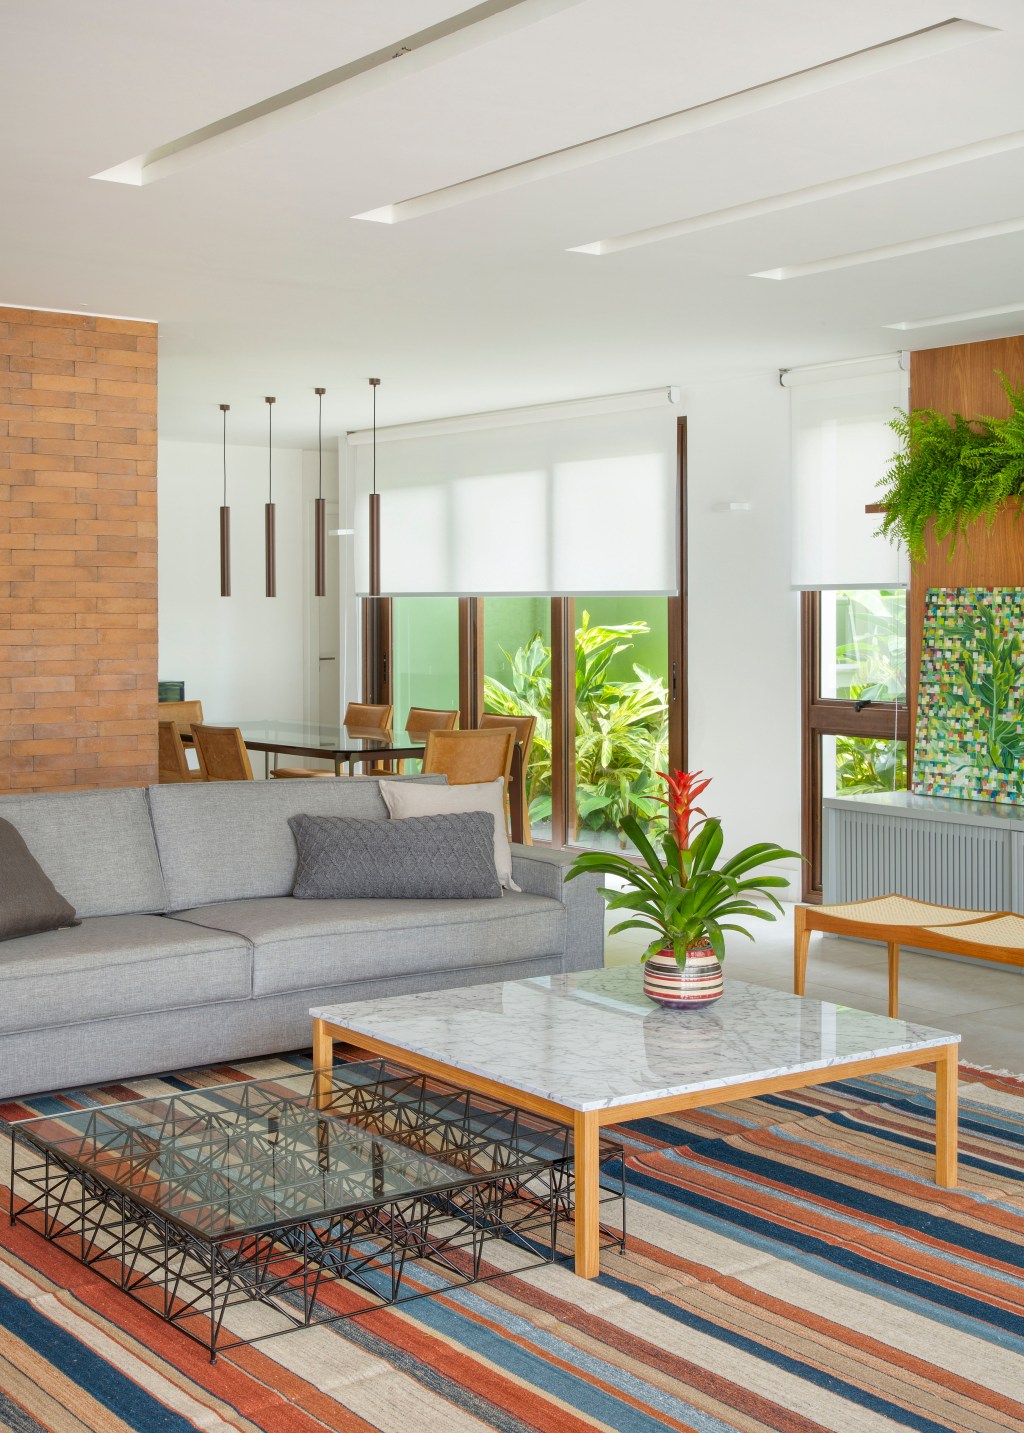 Casa de praia de 420 m² ganha estilo urbano e loft na garagem. Projeto Studio 021 Arquitetura. Na foto, sala de estar com sofá cinza e tapete listrado.